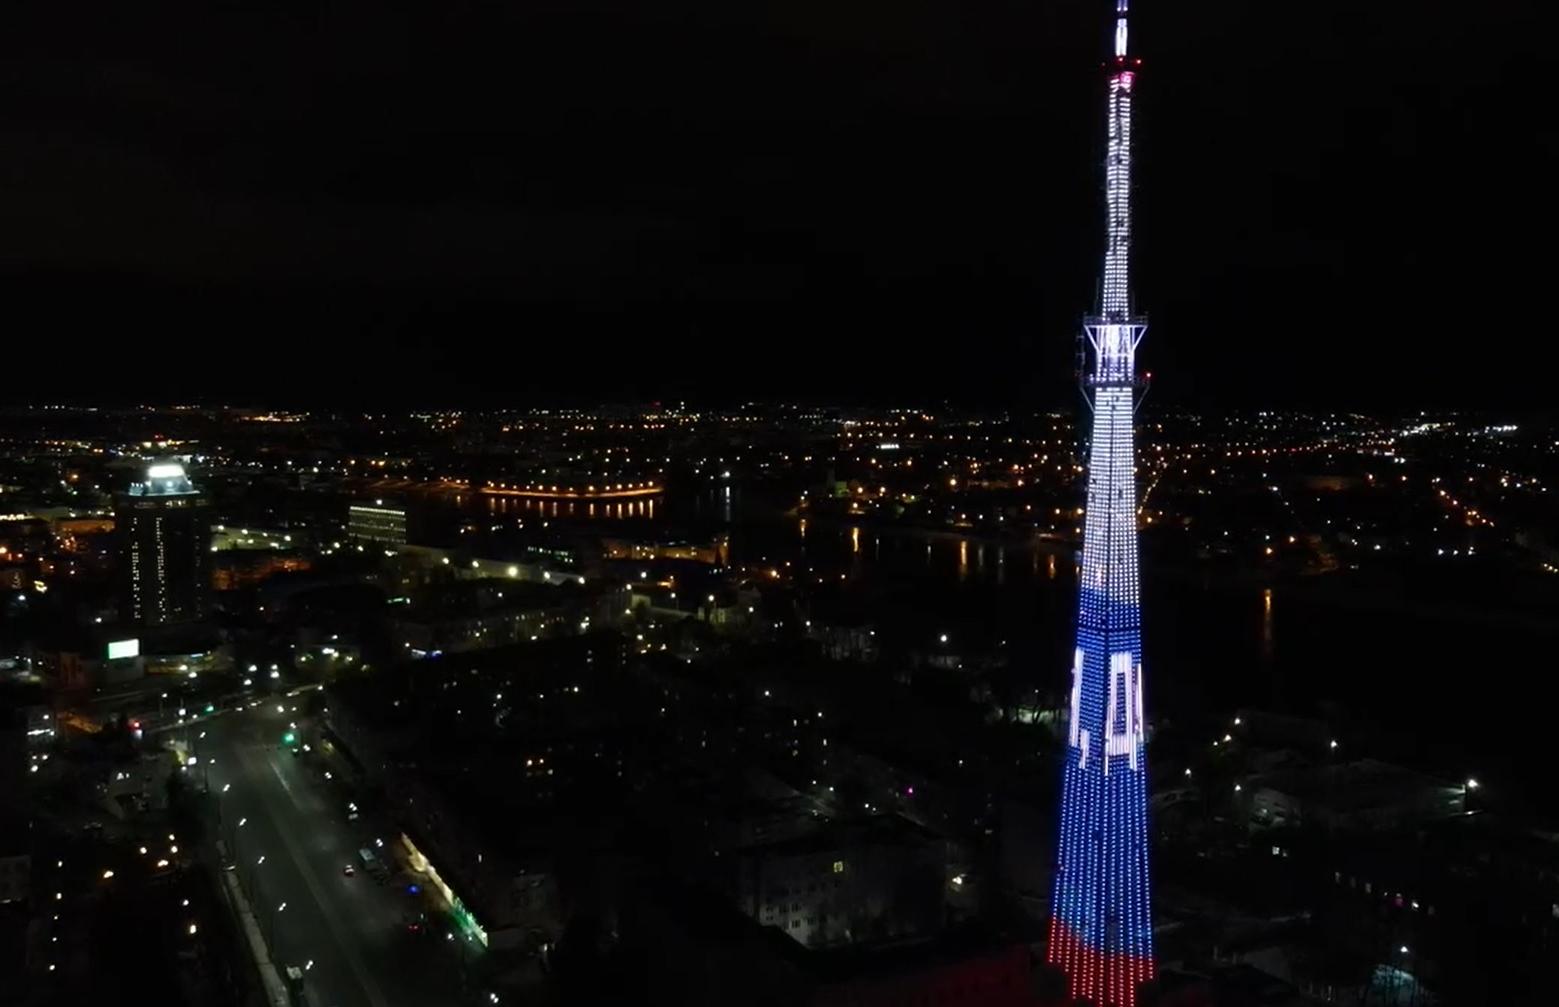 На телебашне в Твери включат подсветку в честь Дня молодёжи России